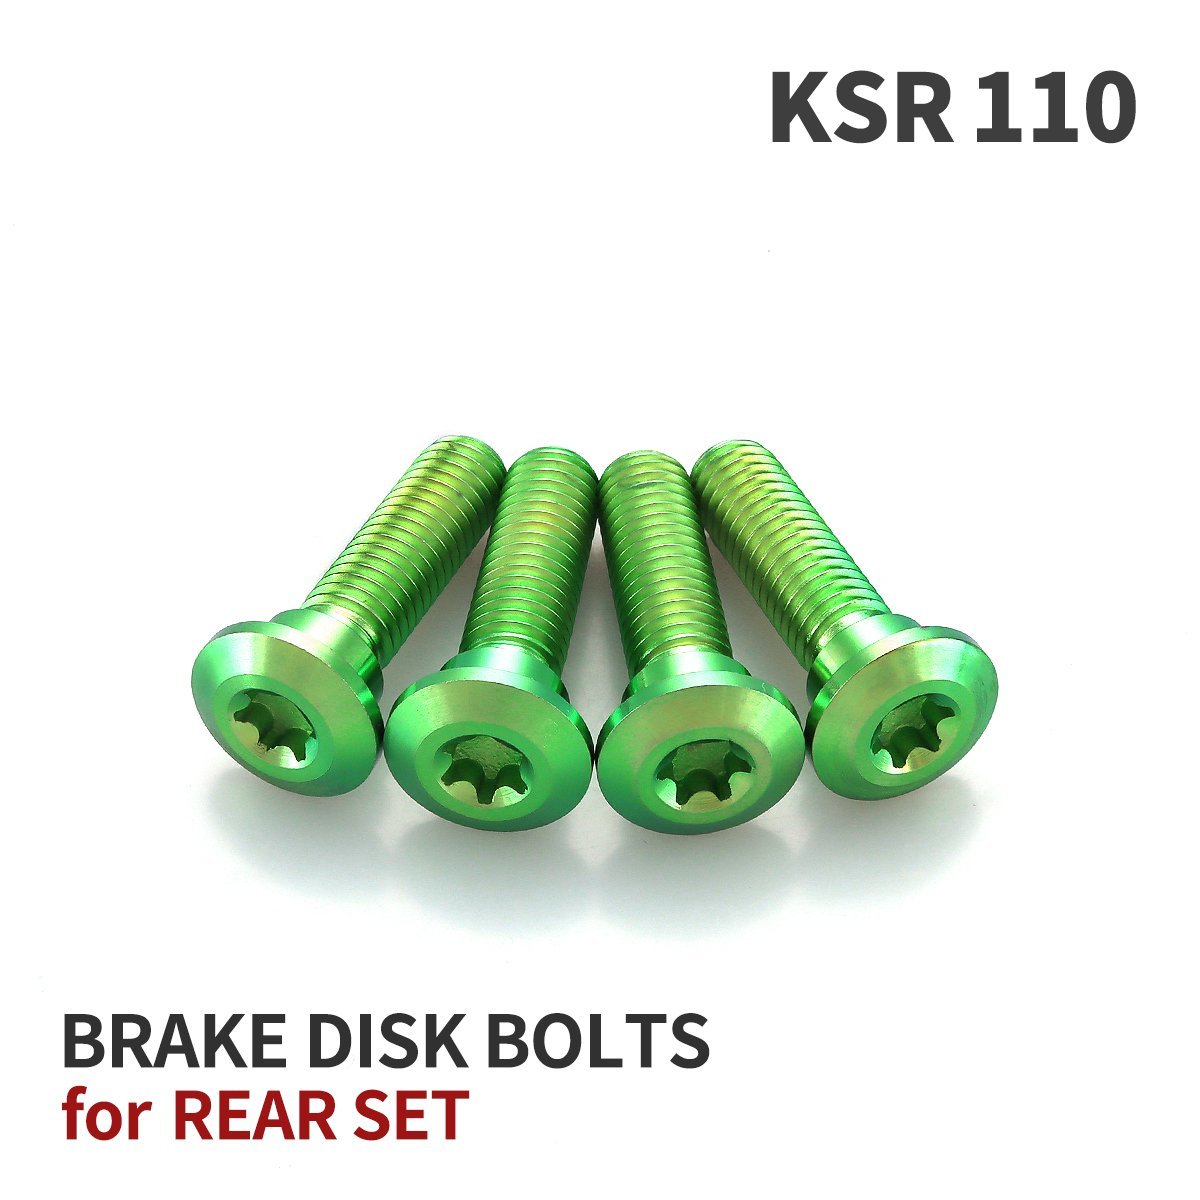 KSR110 64チタン ブレーキディスクローター ボルト リア用 4本セット M8 P1.25 カワサキ車用 グリーン JA22014_画像1